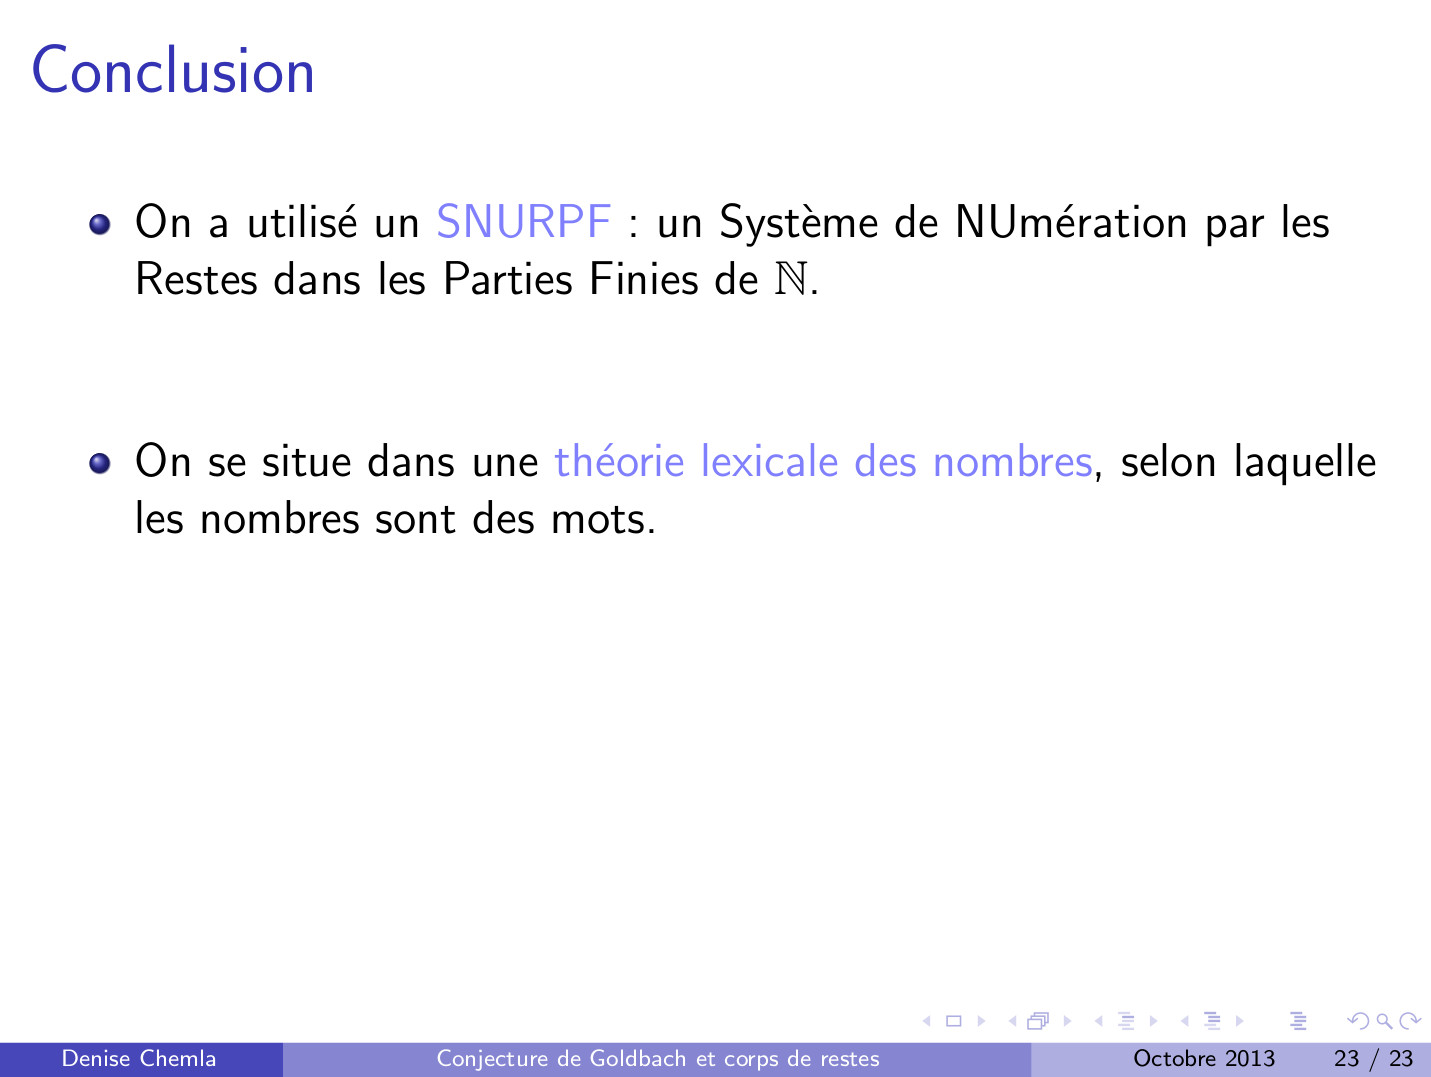 le SNURPF ou Système de Numération par les restes dans les Parties Finies de N que j'ai utilisé pour comprendre la conjecture de Goldbach